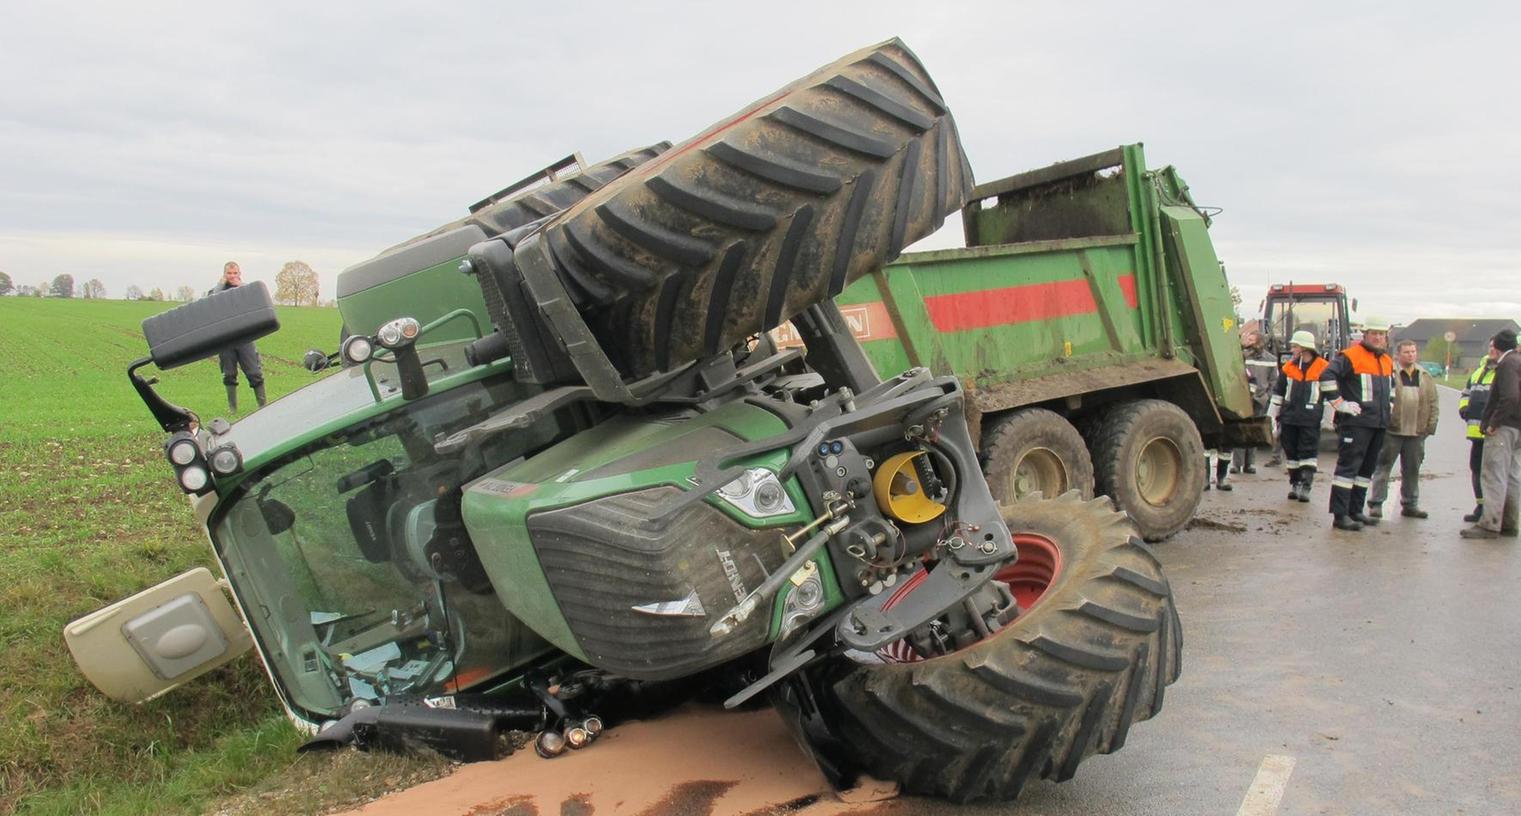 Schwer verletzt: Traktor begräbt 21-Jährigen unter sich 